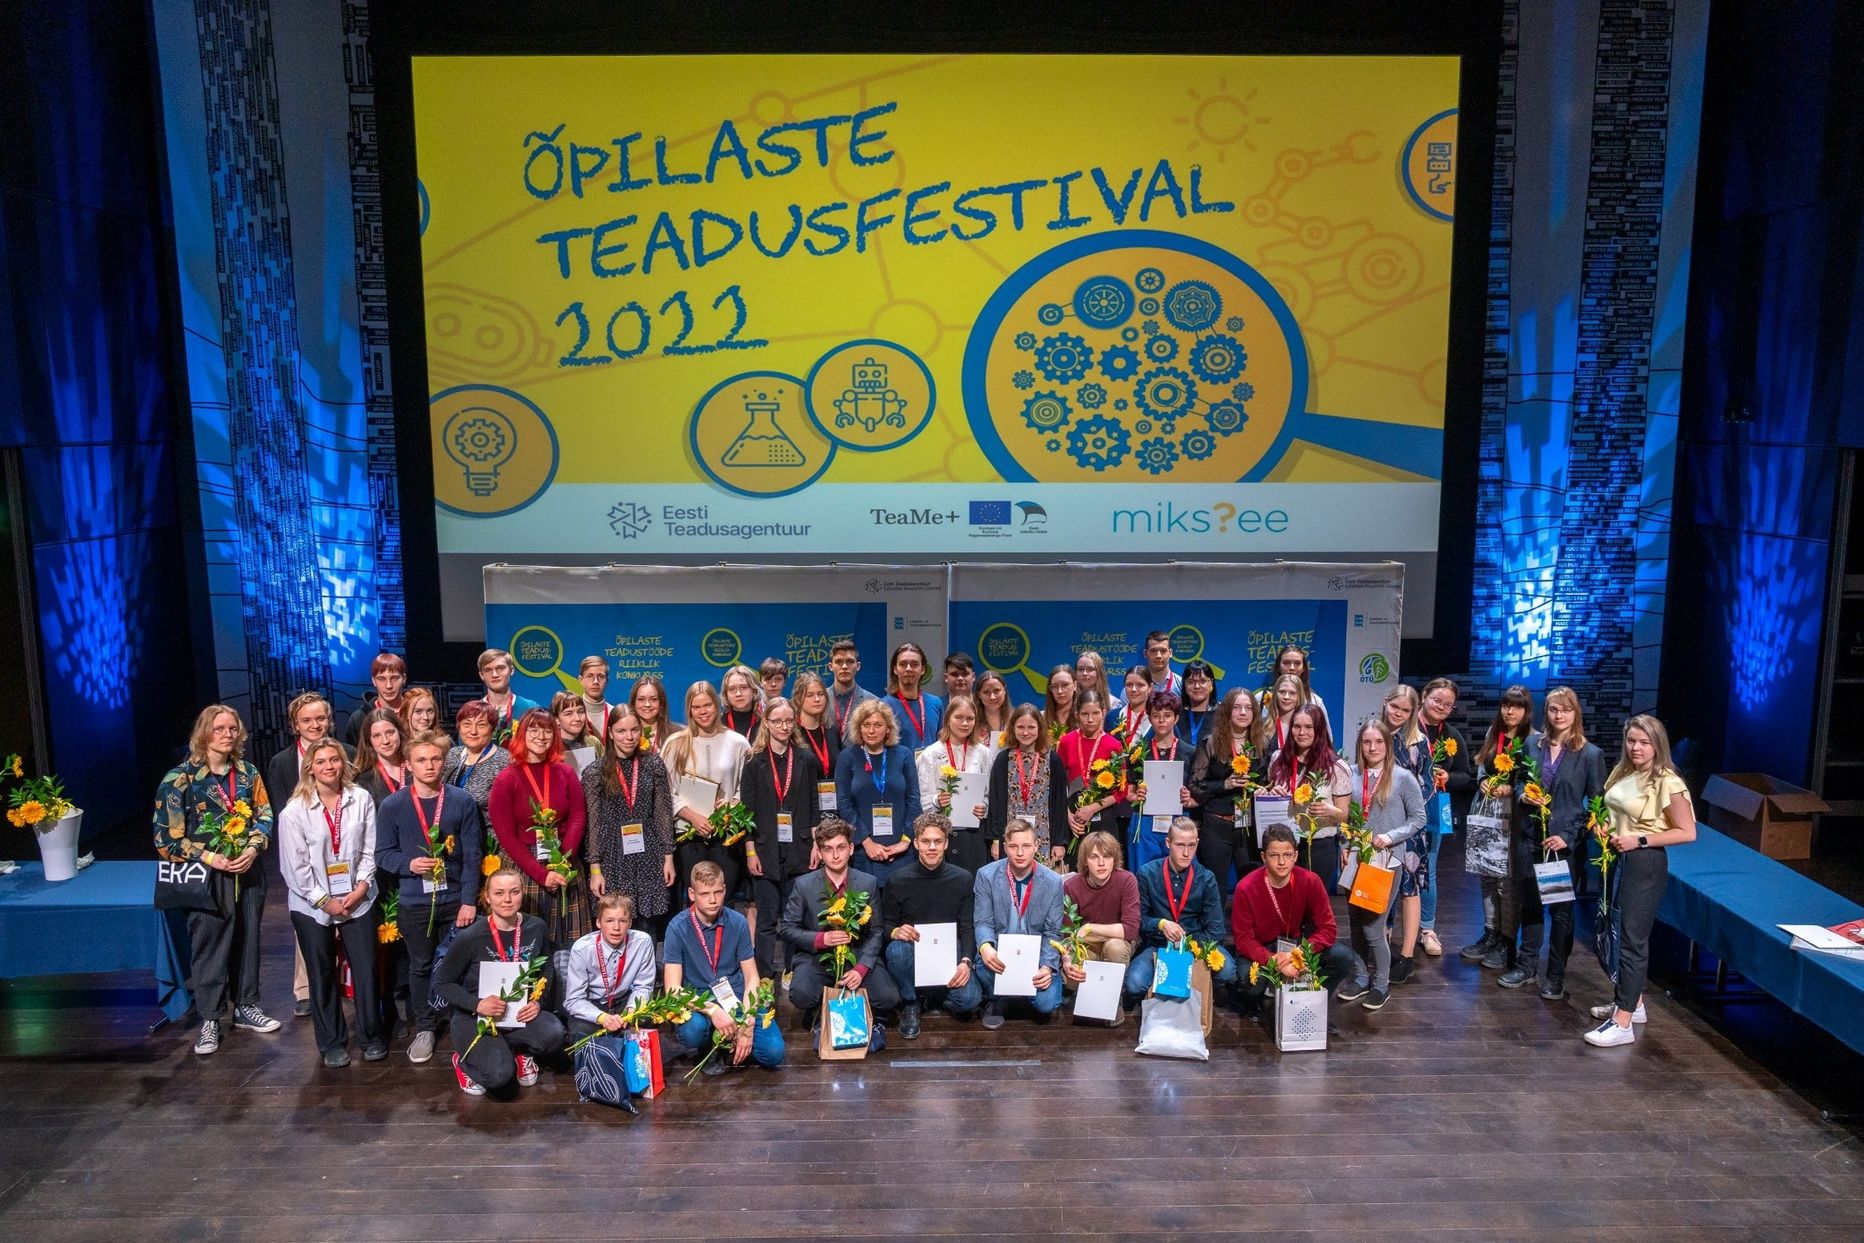 Õpilaste teadusfestival  Eesti Rahva Muuseumis 2022.aastal.